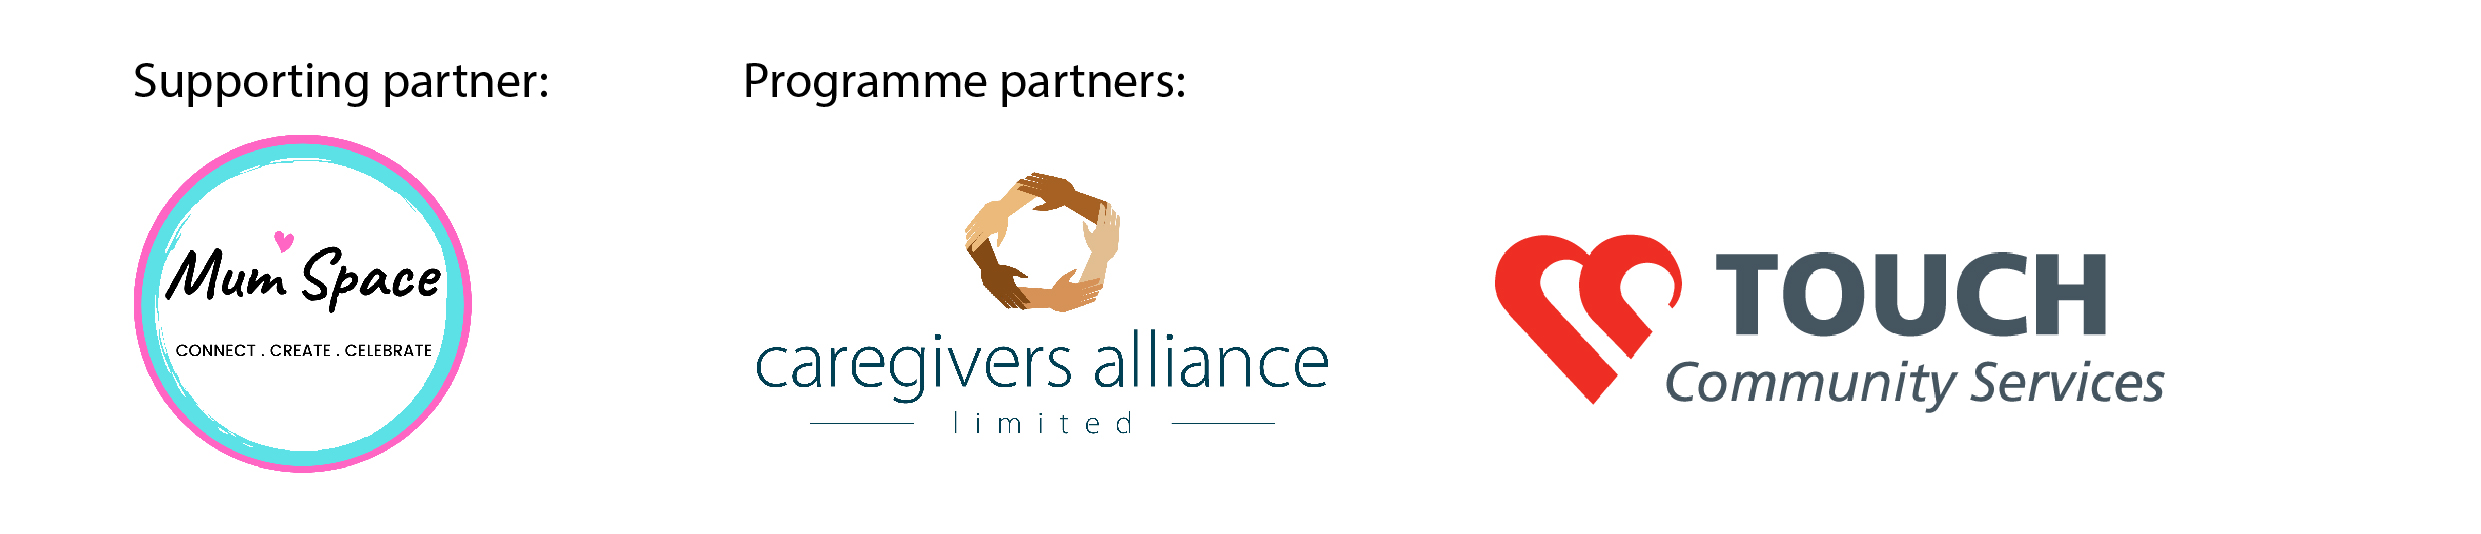 BTL 2021 partner logos for website-02